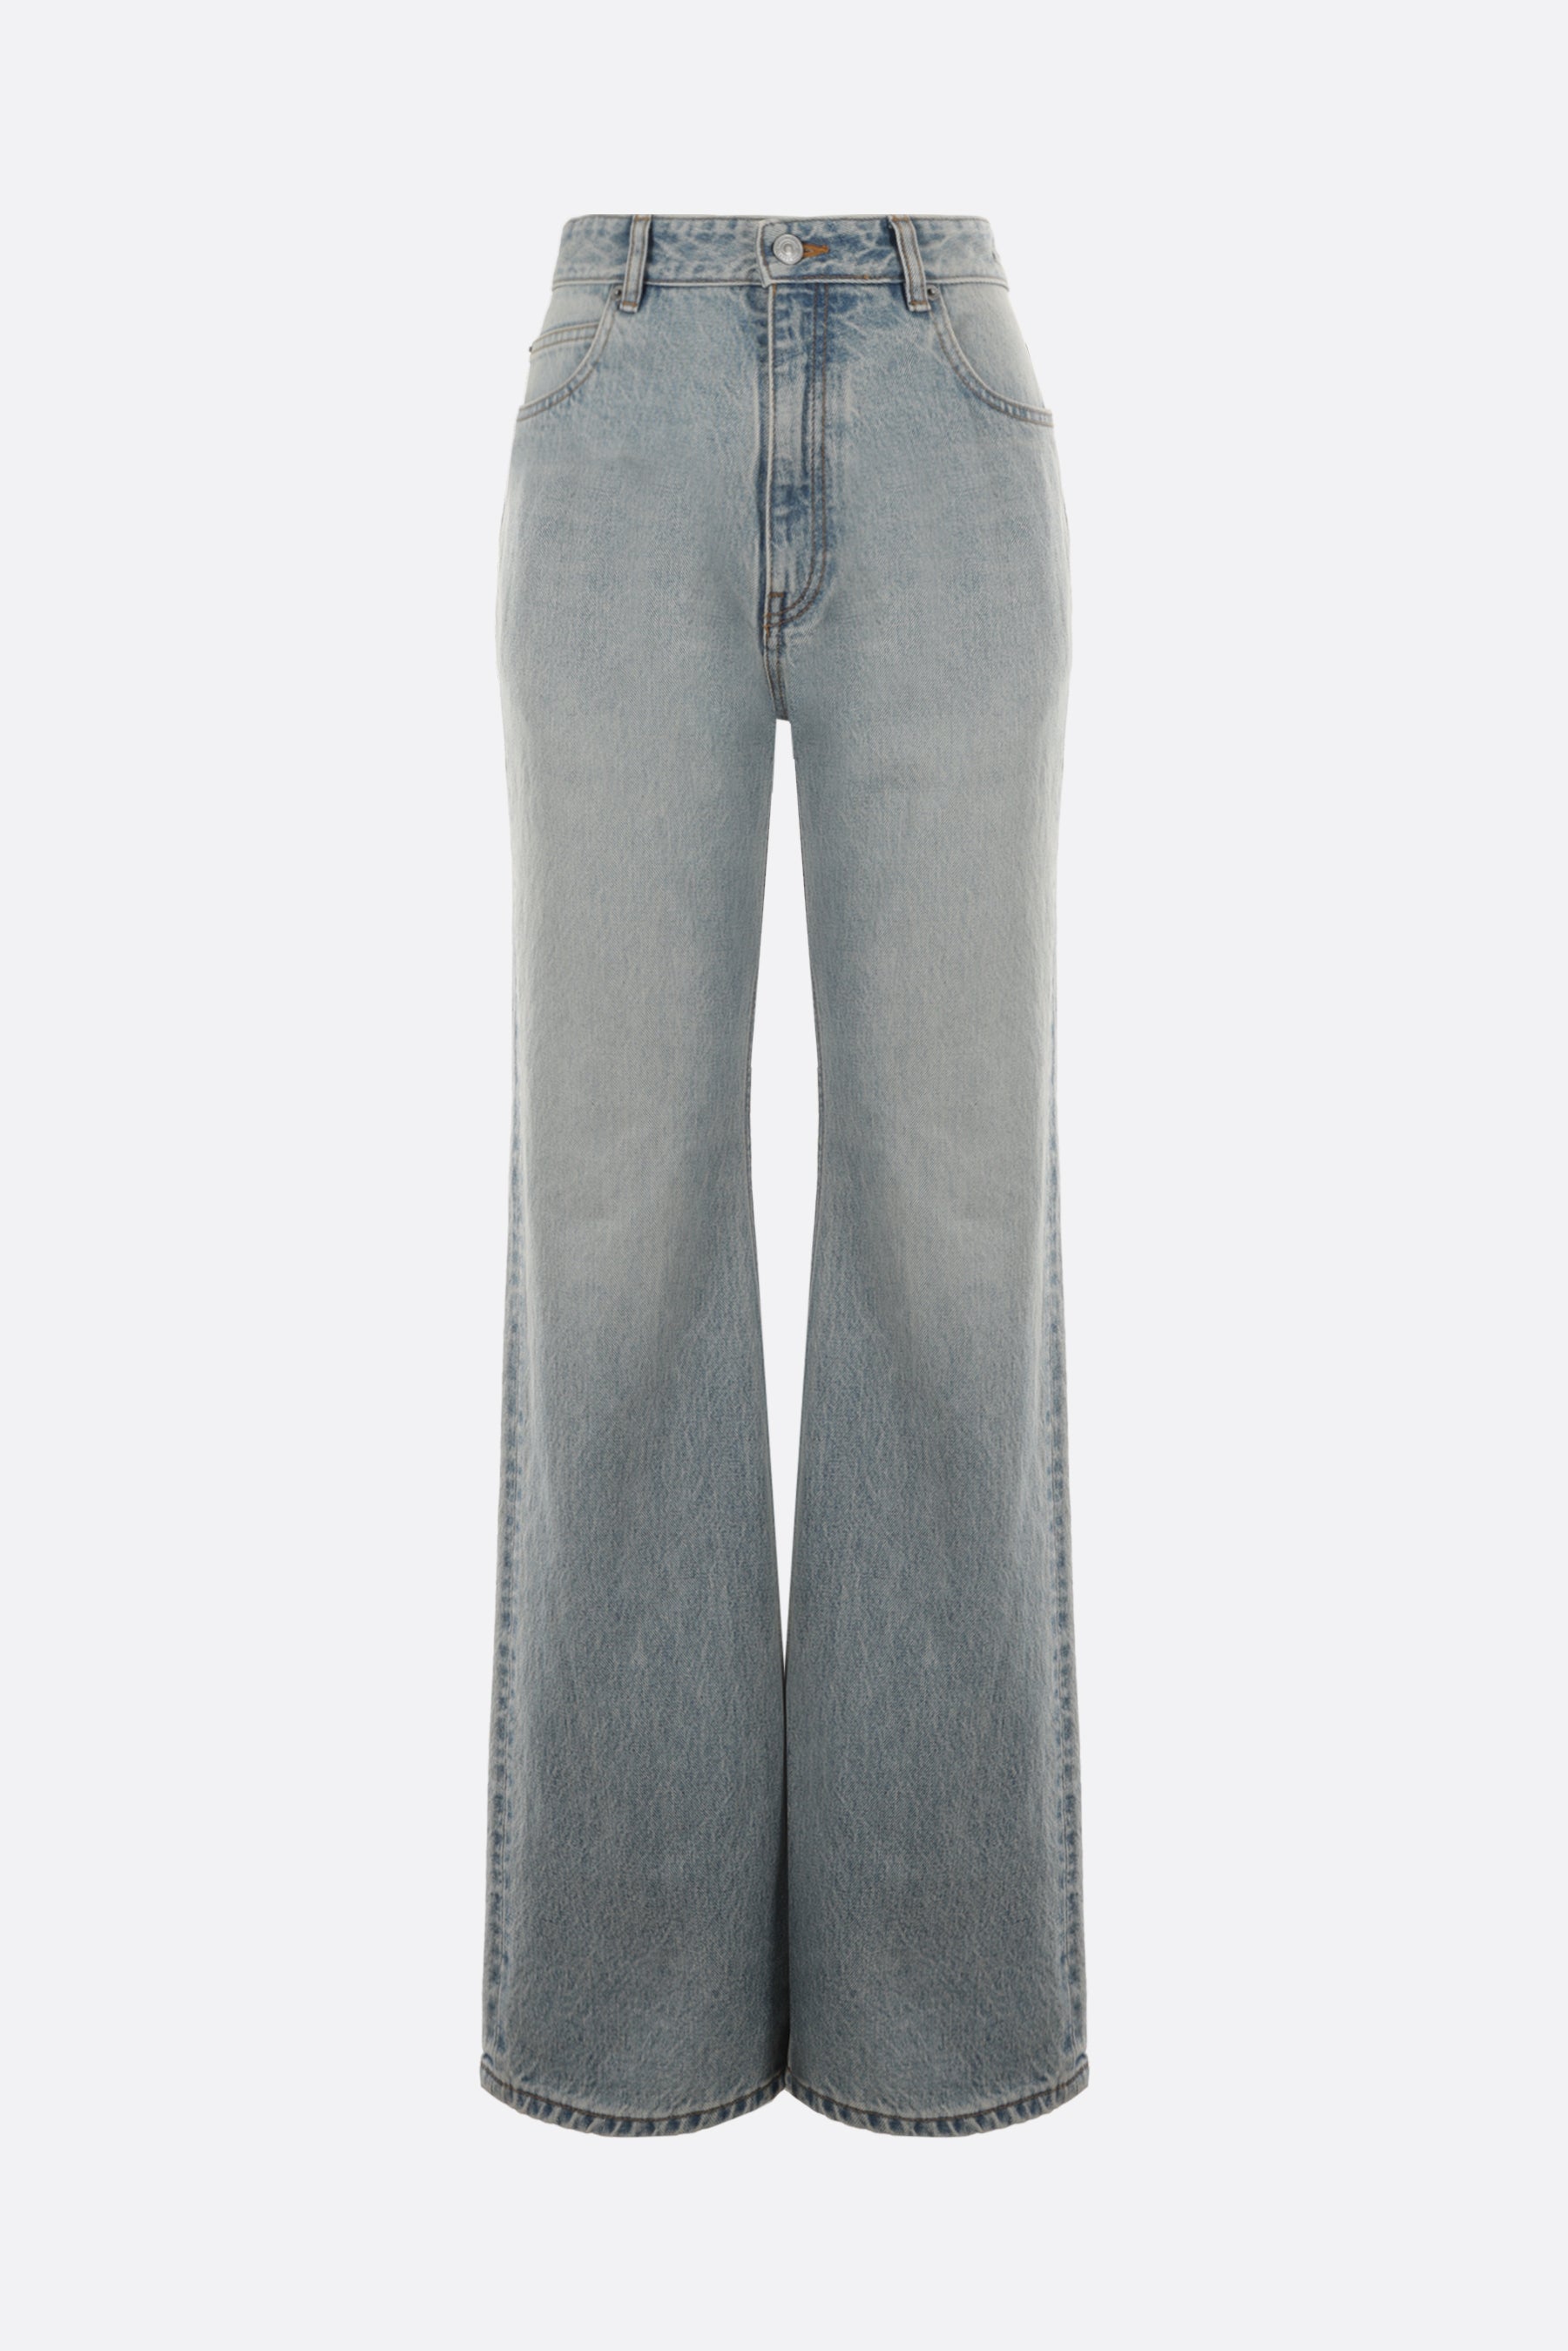 jeans flare in denim giapponese